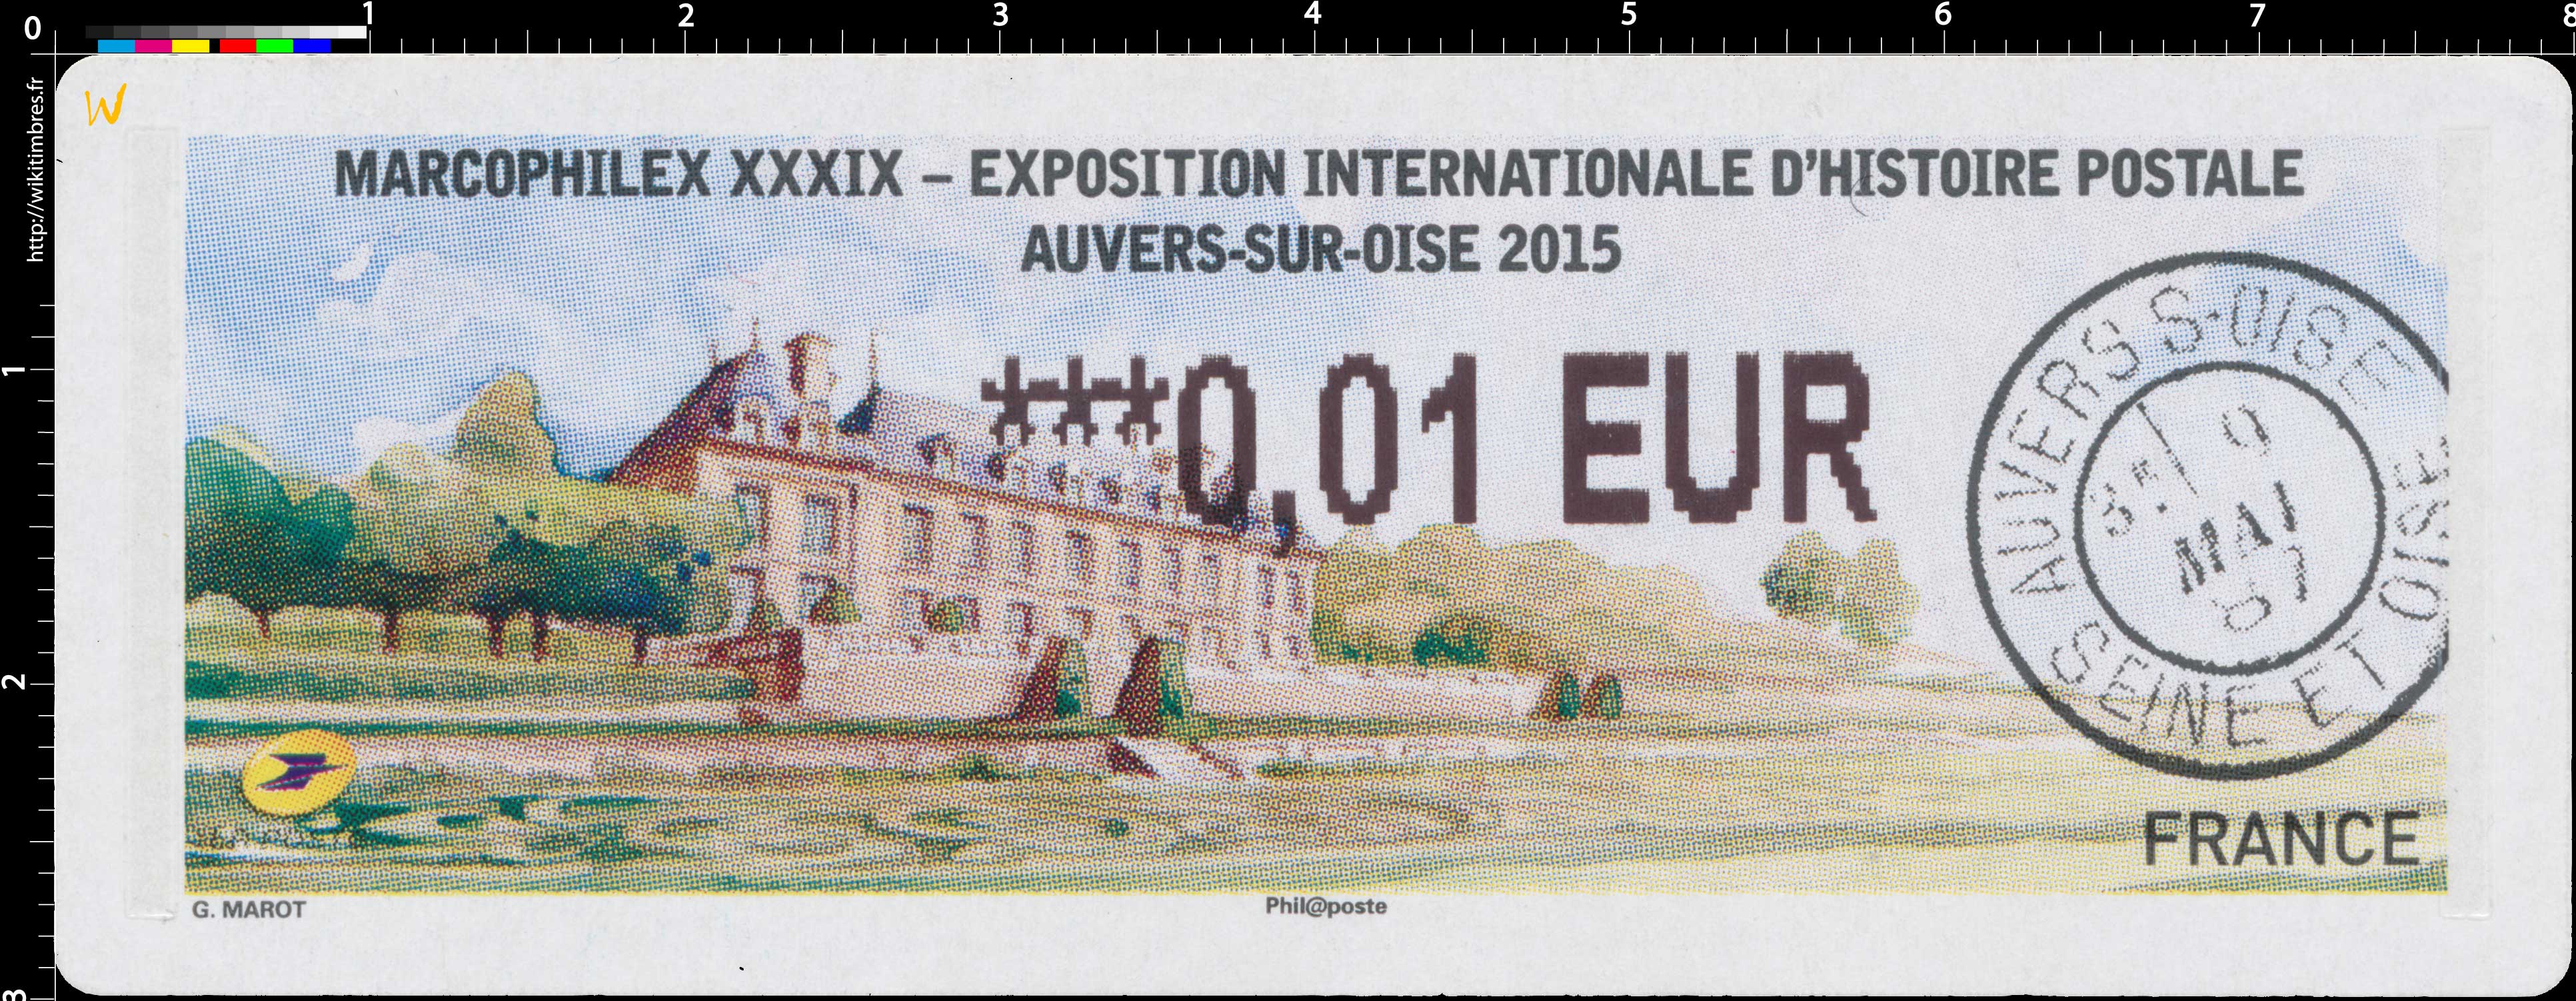 Marcophilex XXXIX - Exposition internationale d'histoire postale Auvers-sur-Oise 2015 